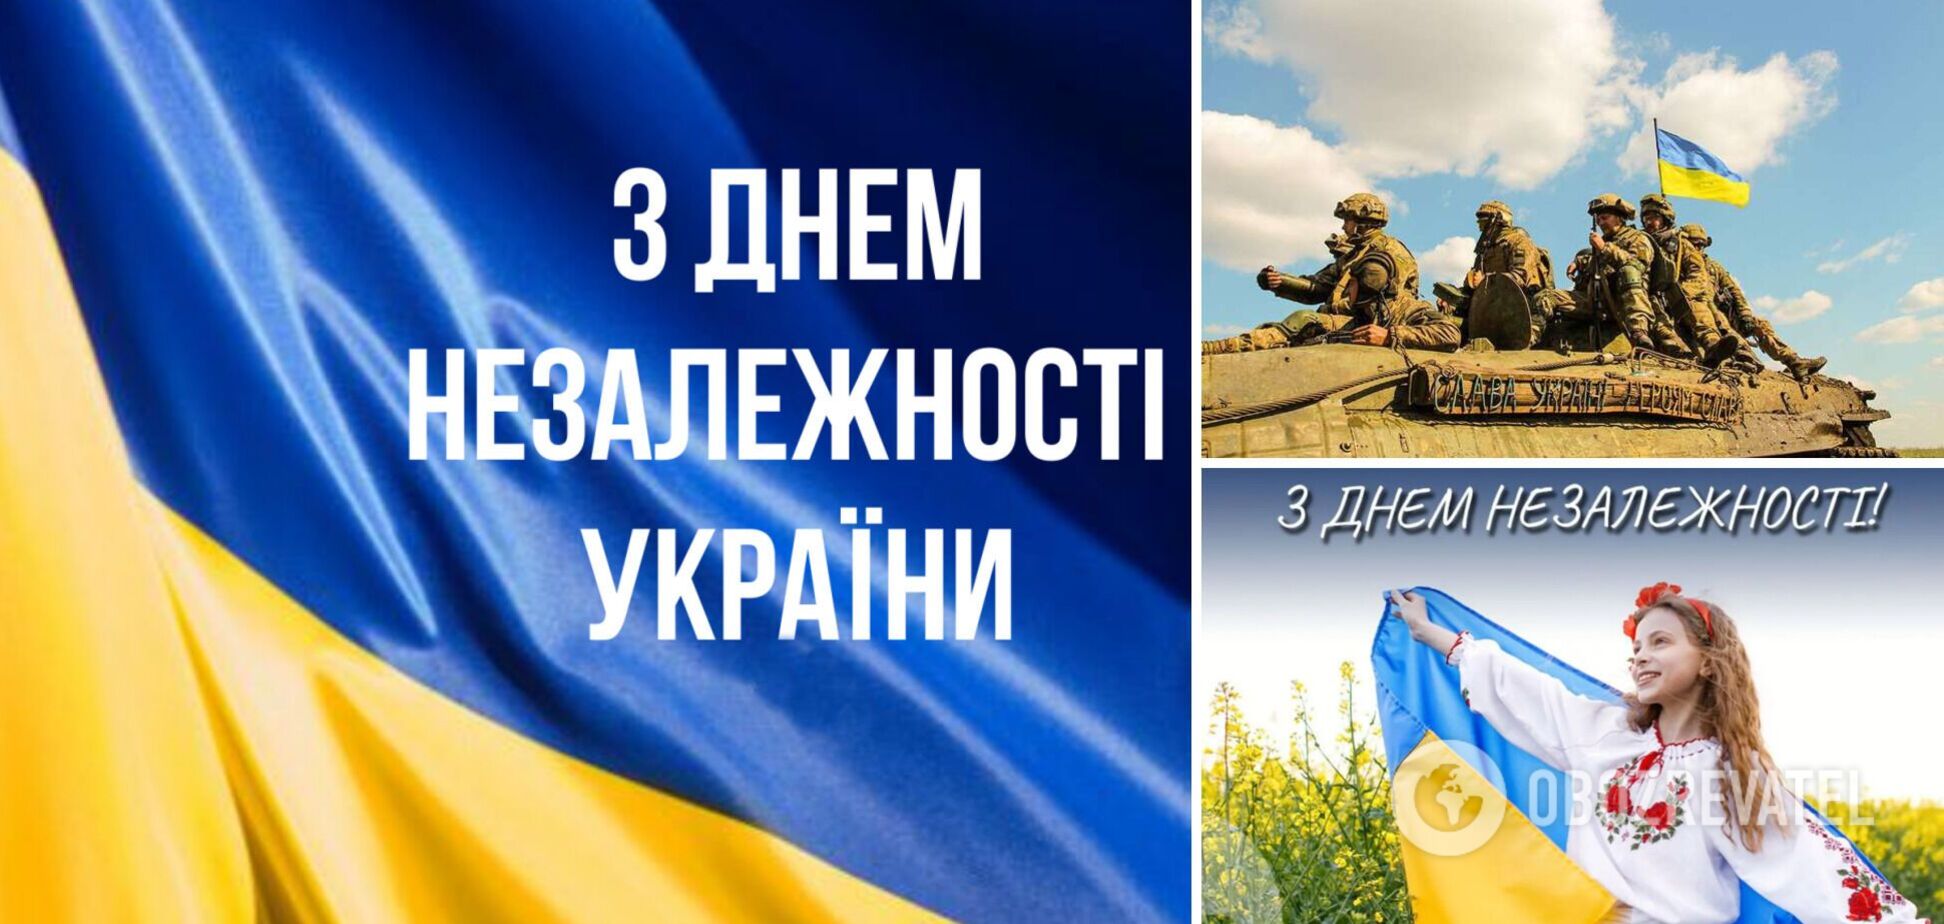 С Днем Независимости Украины: теплые поздравления защитникам на фронте